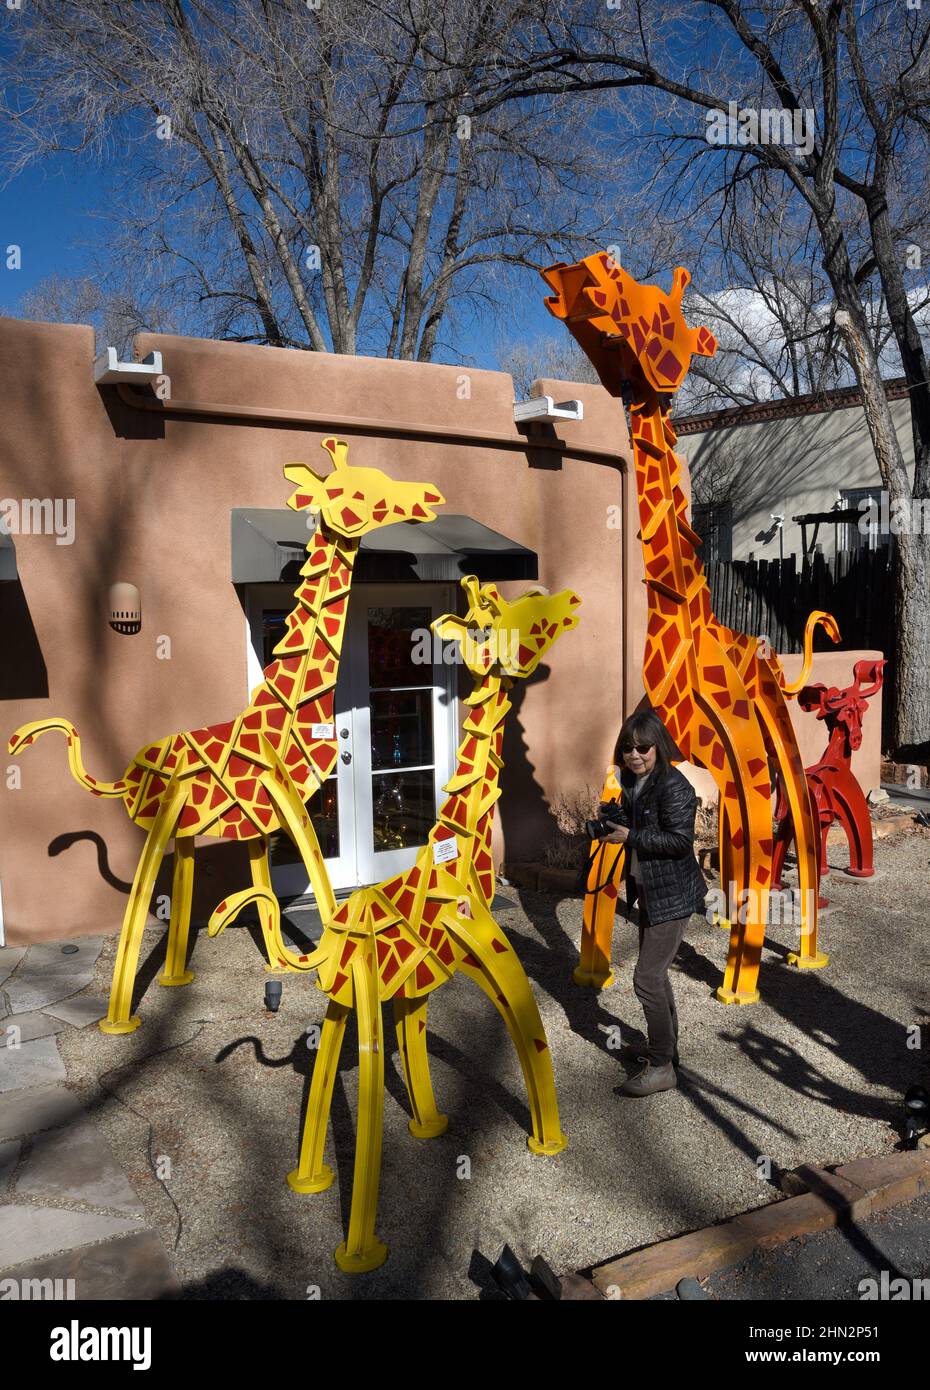 Un touriste regarde les sculptures d'animaux colorées de Fredrick Prescott à vendre dans une galerie d'art de Santa Fe, Nouveau-Mexique. Banque D'Images